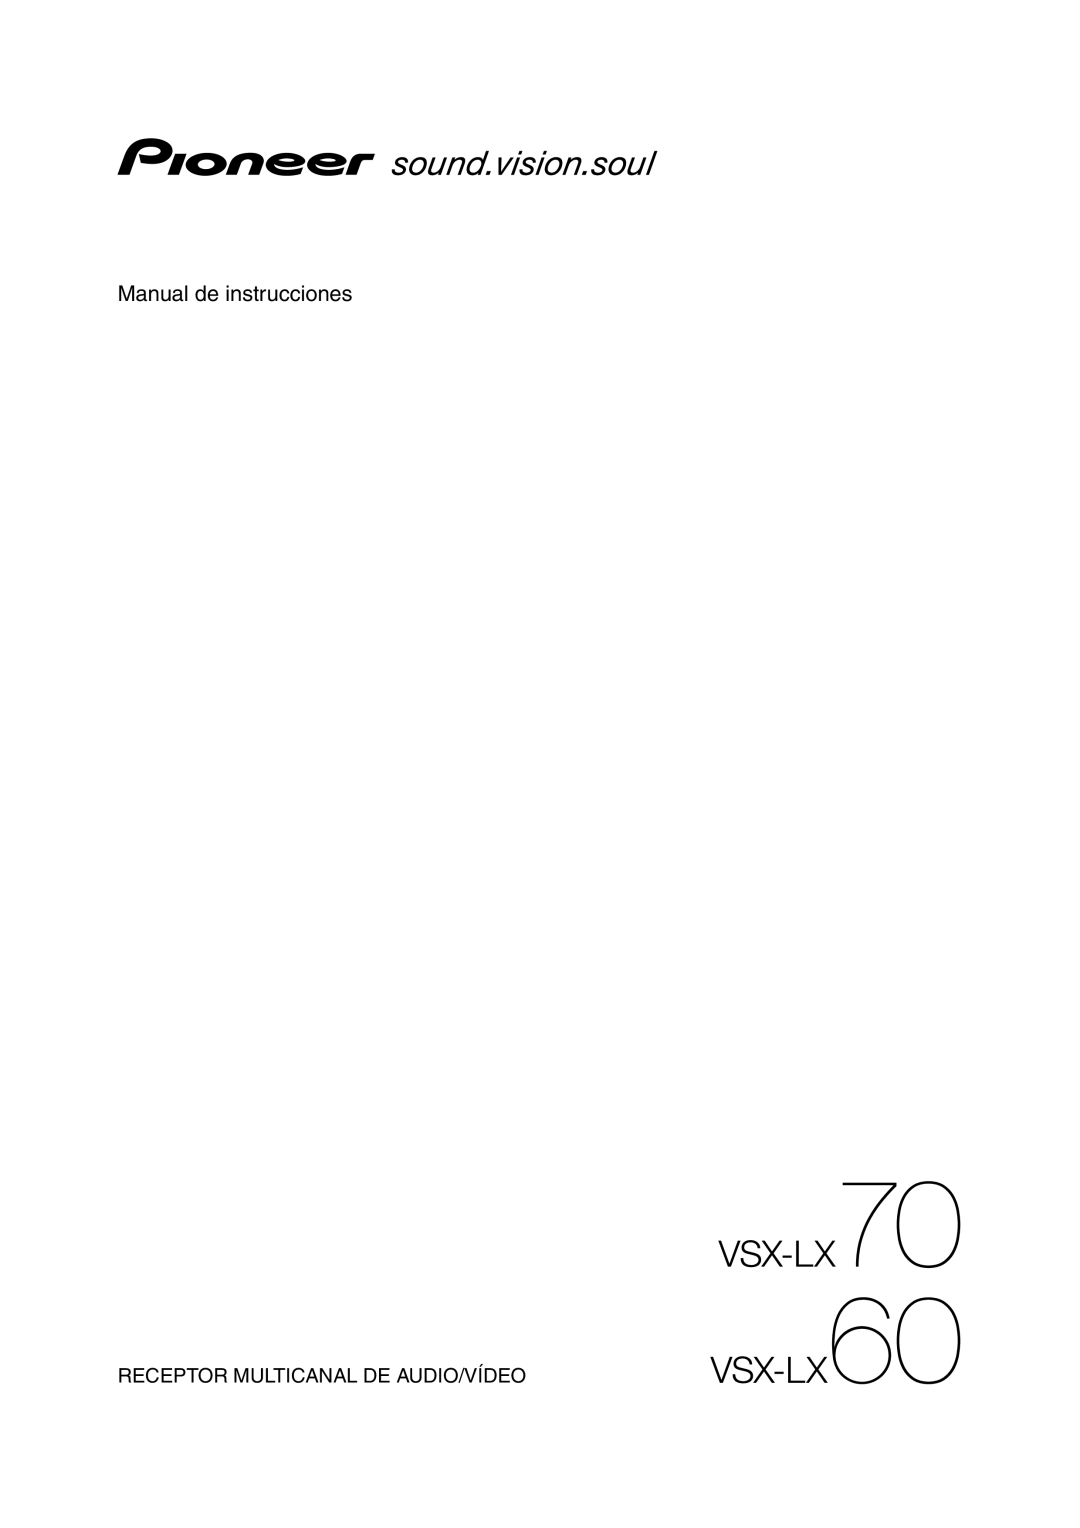 Bernina VSX-LX70, VSX-LX60 manual Manual de instrucciones, Receptor Multicanal De Audio/Vídeo 